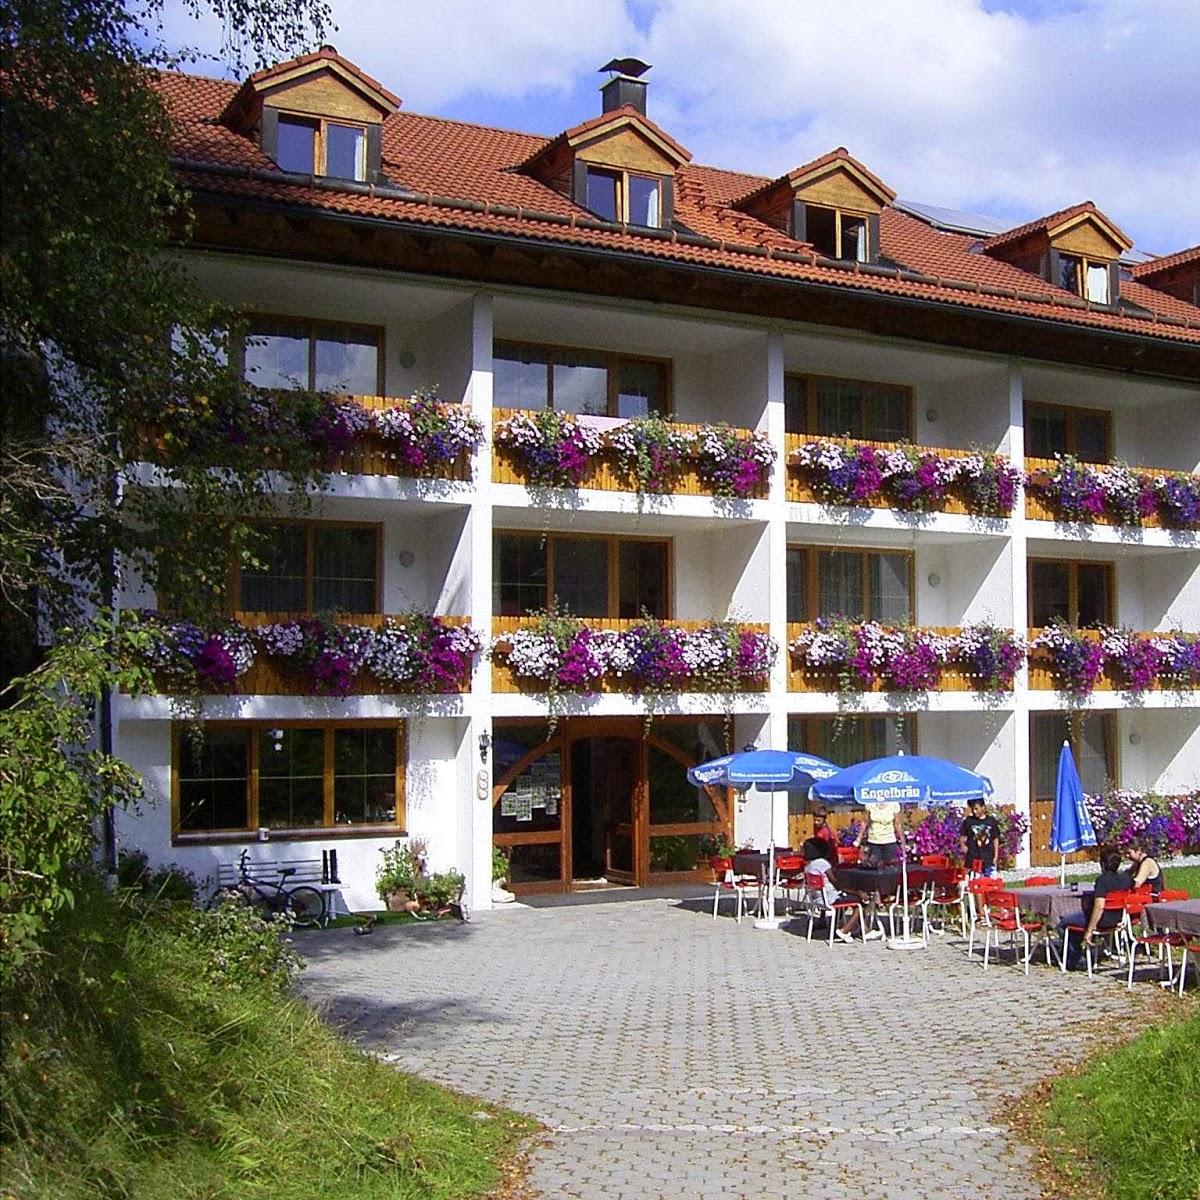 Restaurant "Hotel Pfeiffermühle" in Wertach